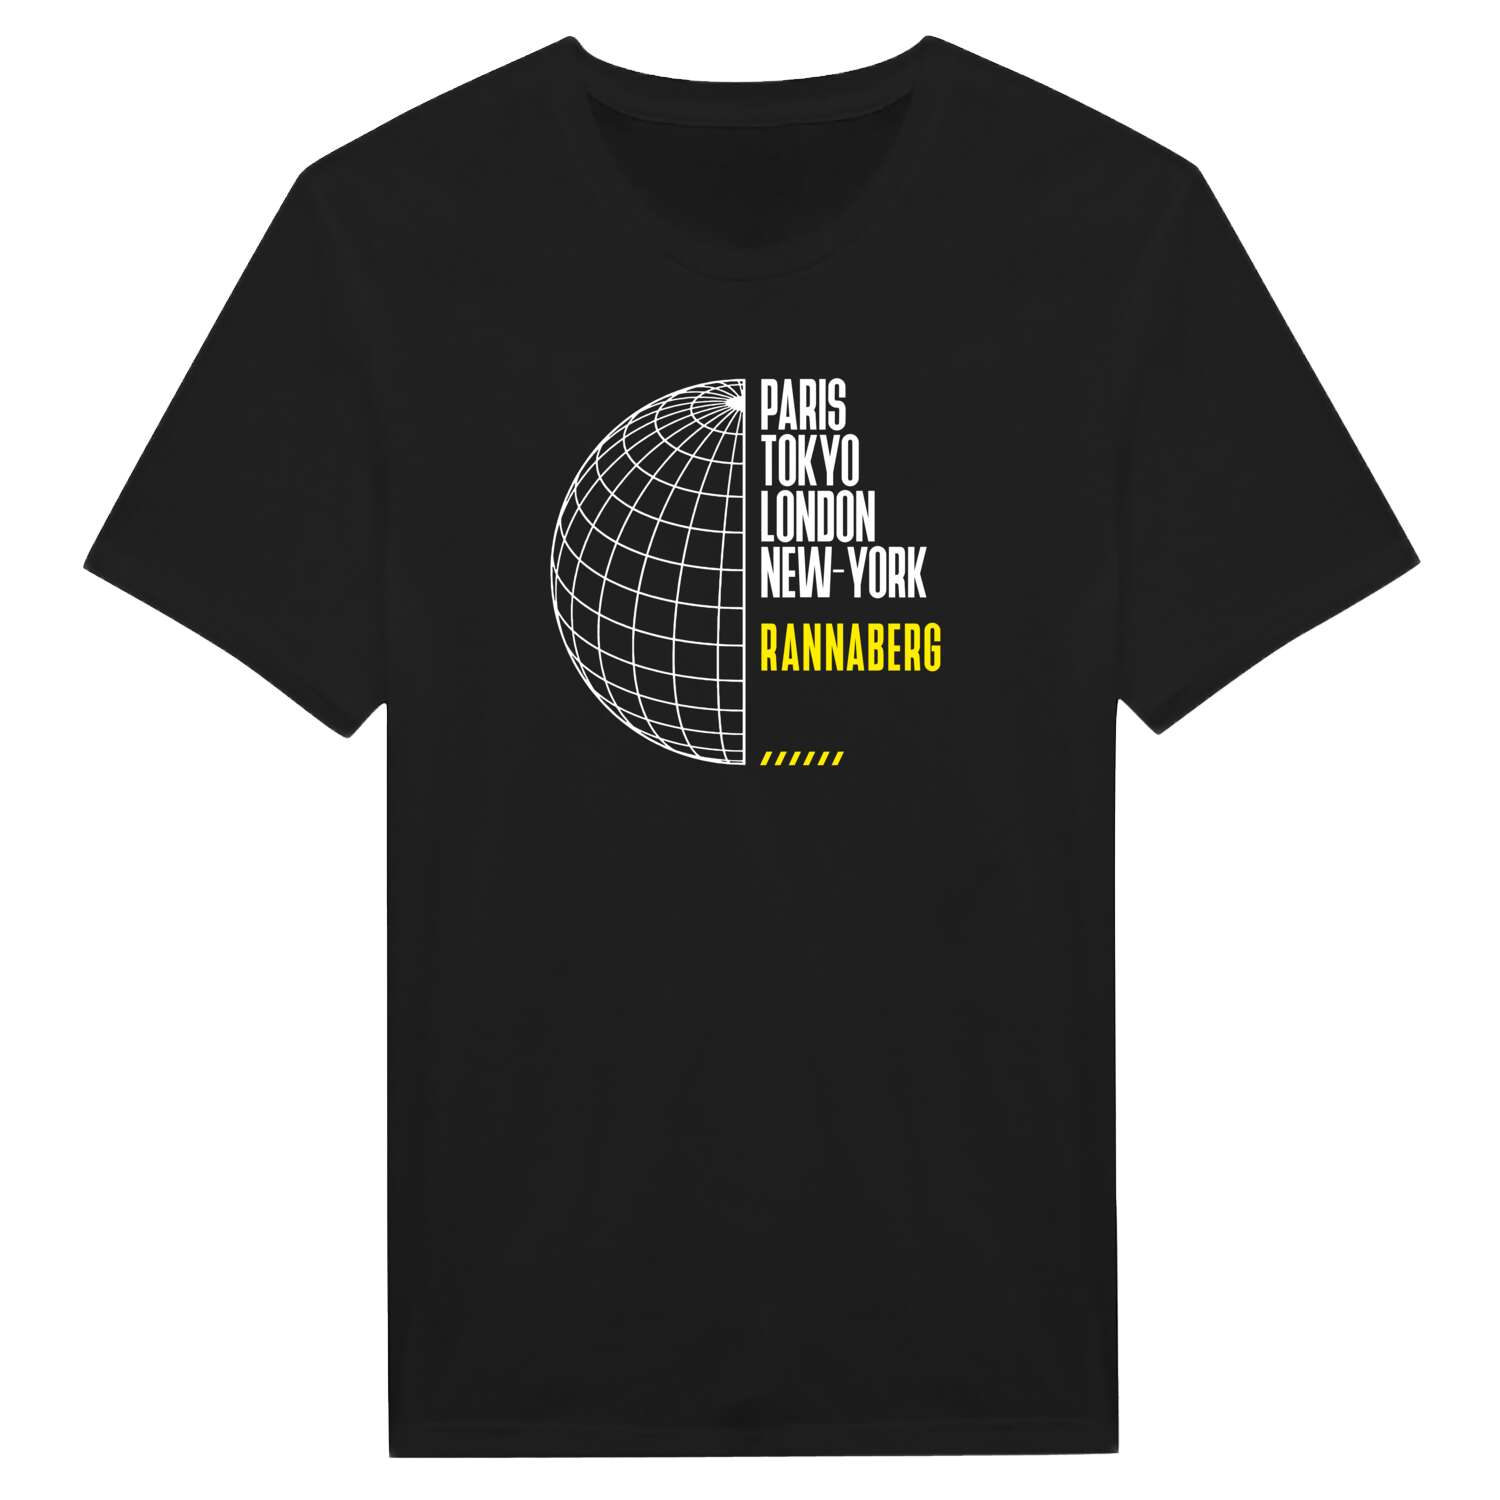 Rannaberg T-Shirt »Paris Tokyo London«